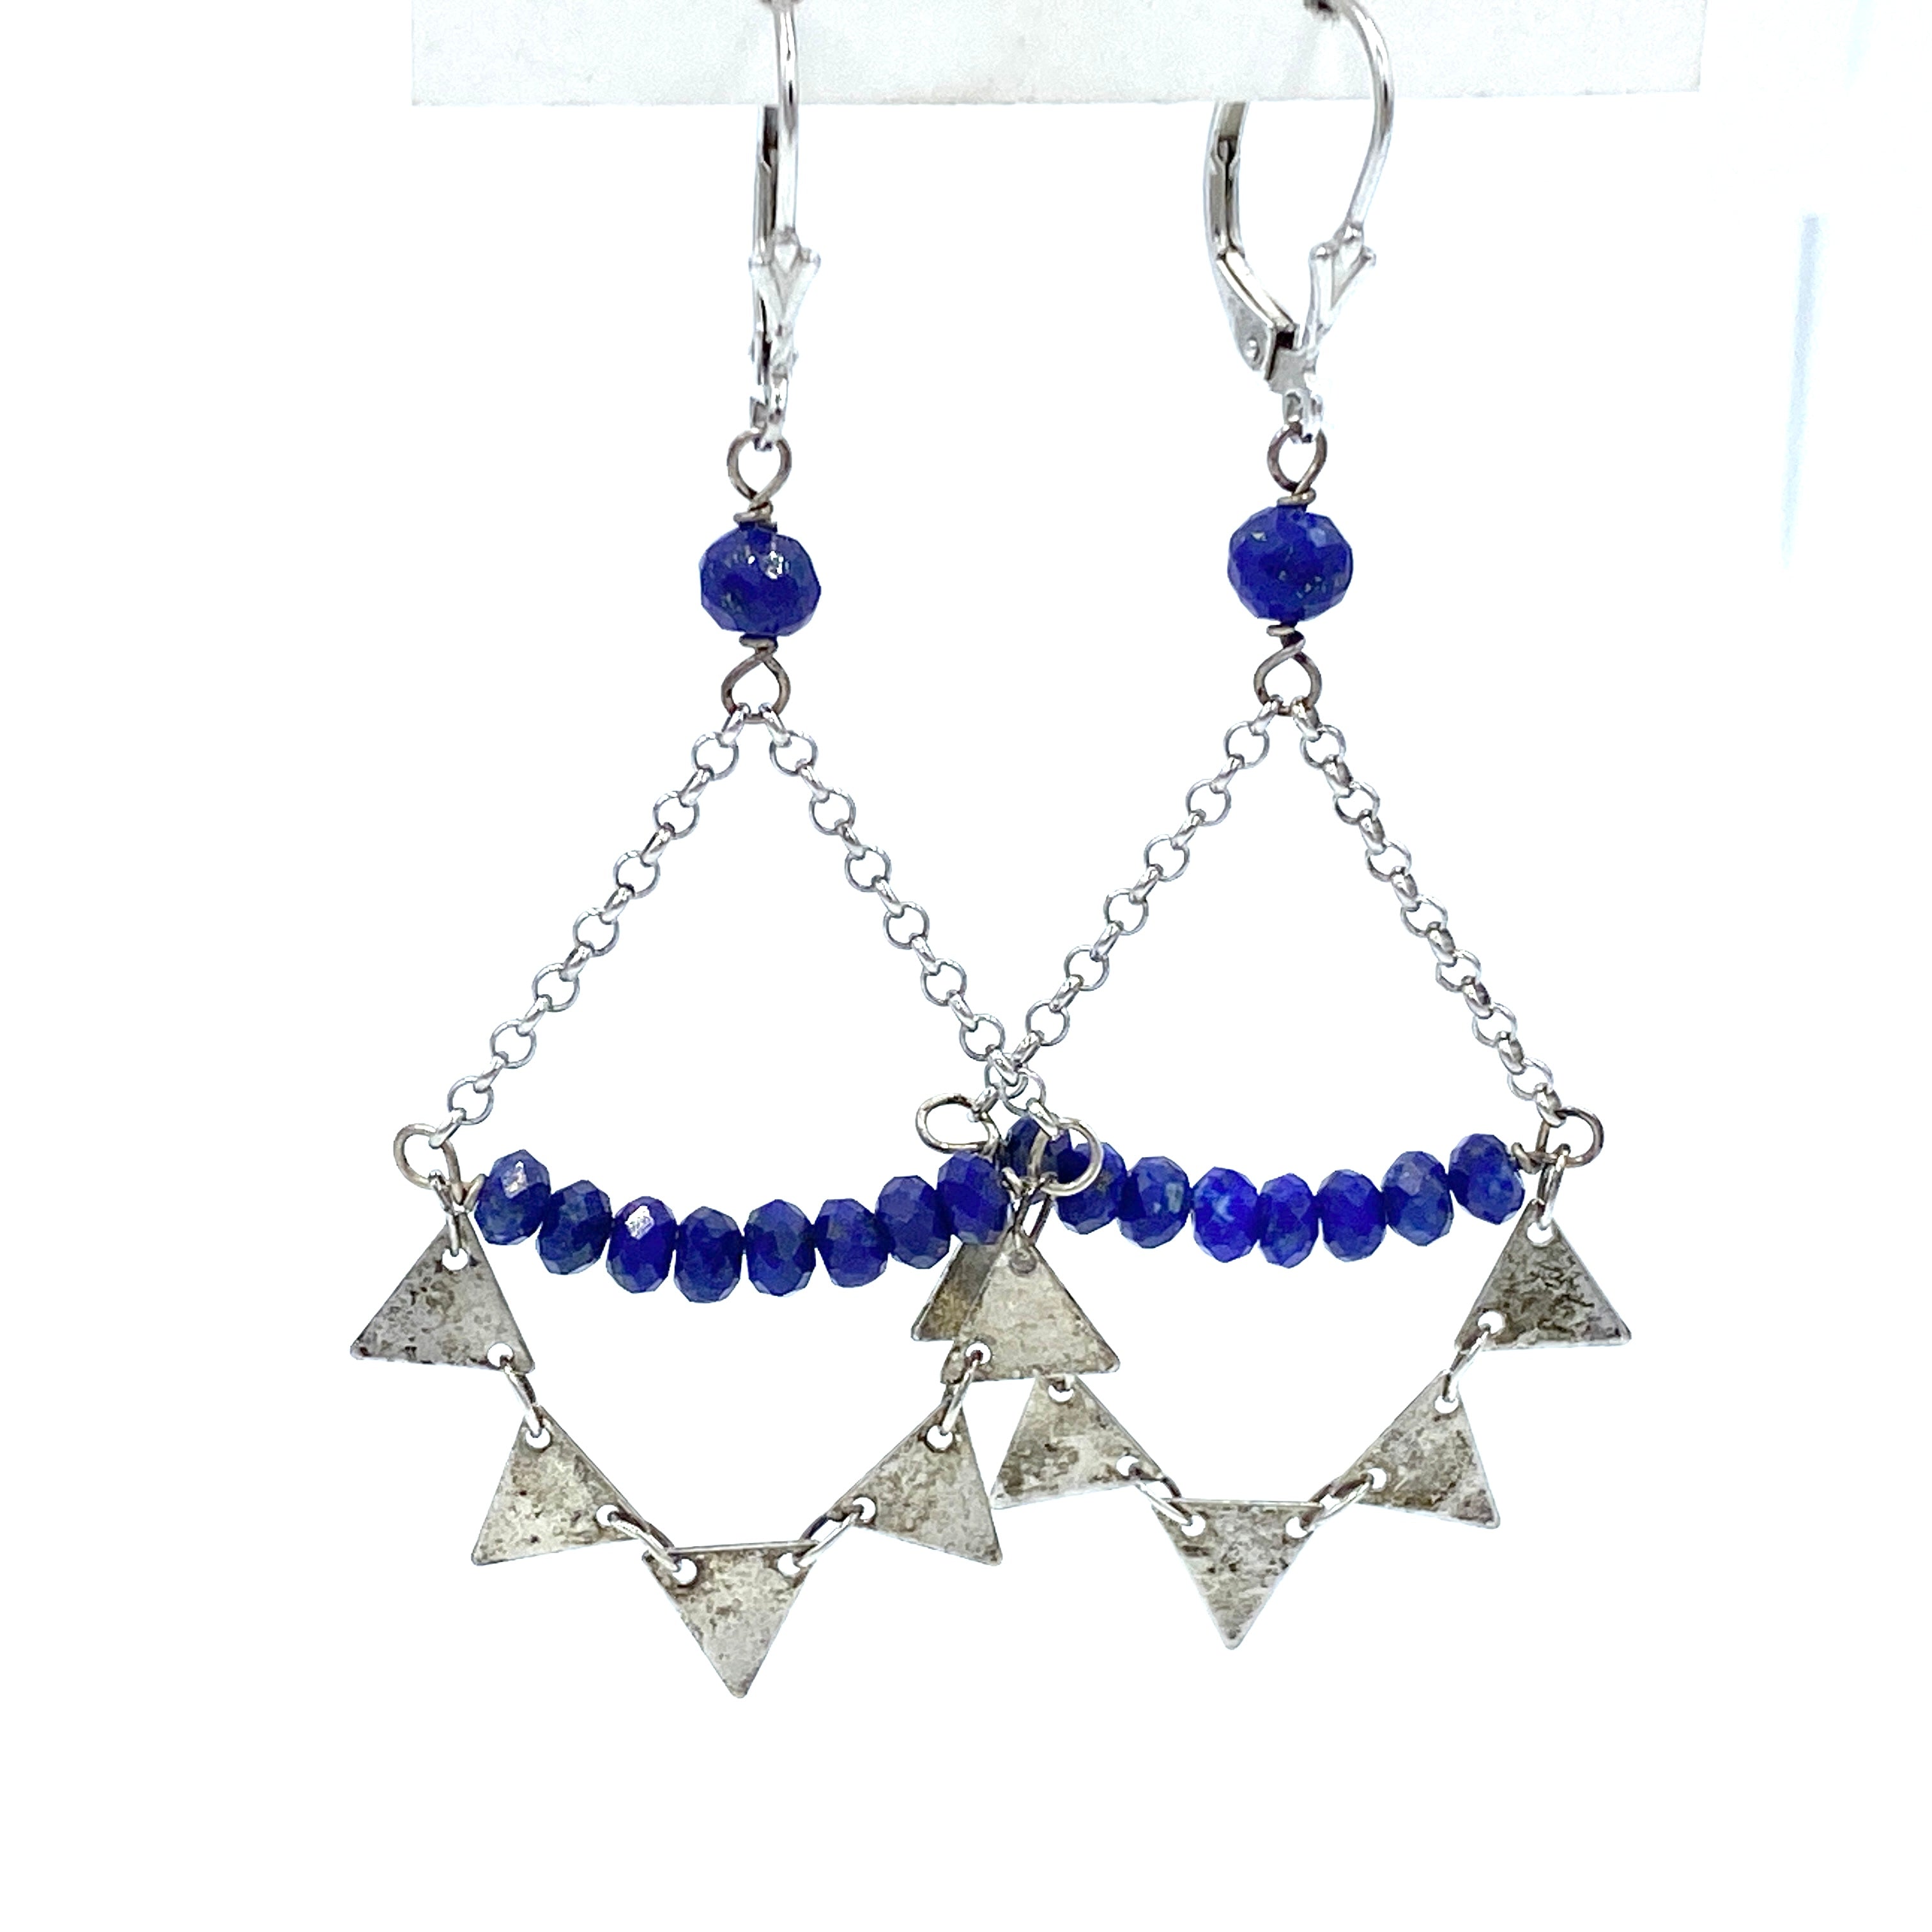 Joanna Bisley Lapis Lazuli Sterling Silver Earrings E3356la